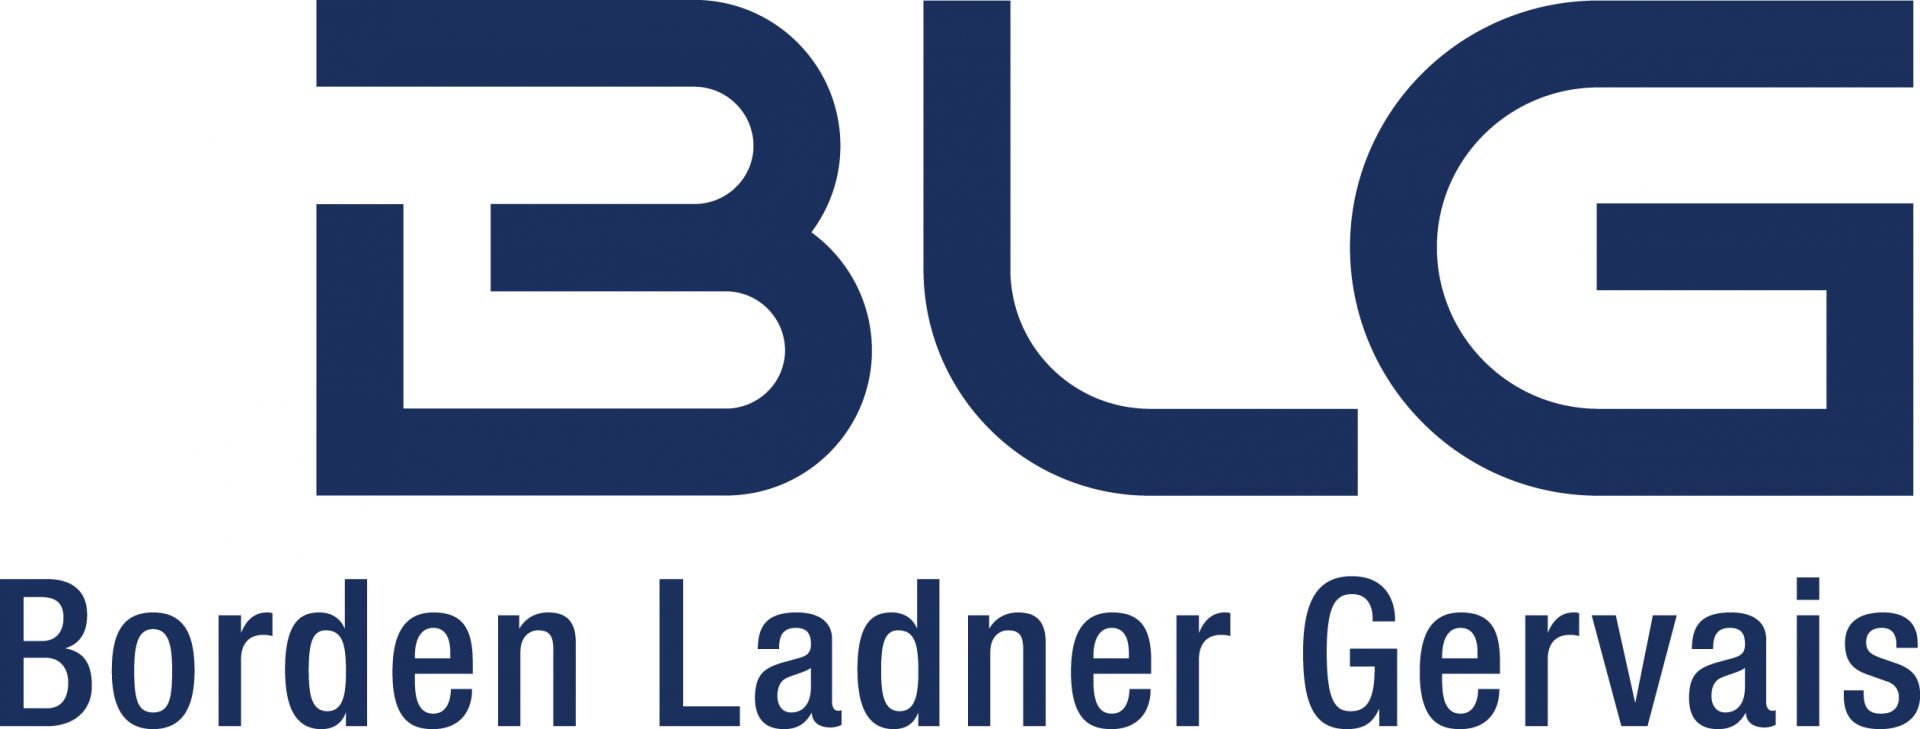 BLG_Logo_RGB_BLUE_HR